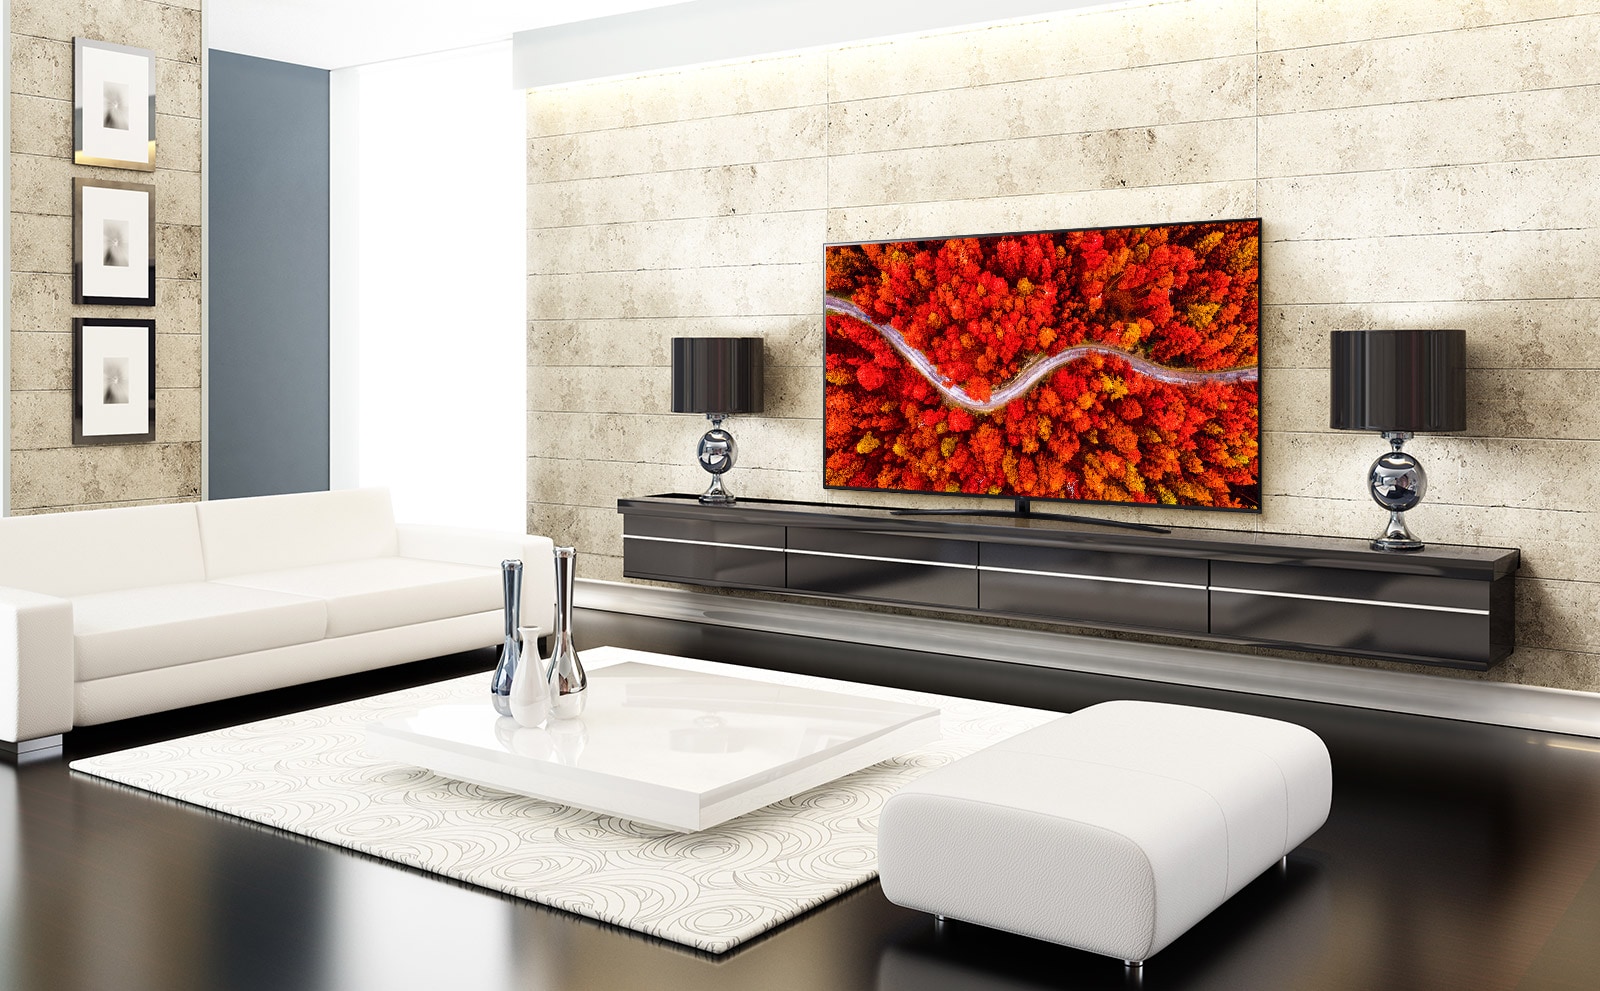 Розкішна вітальня з телевізором, який відображає вид із висоти на ліс у червоному.